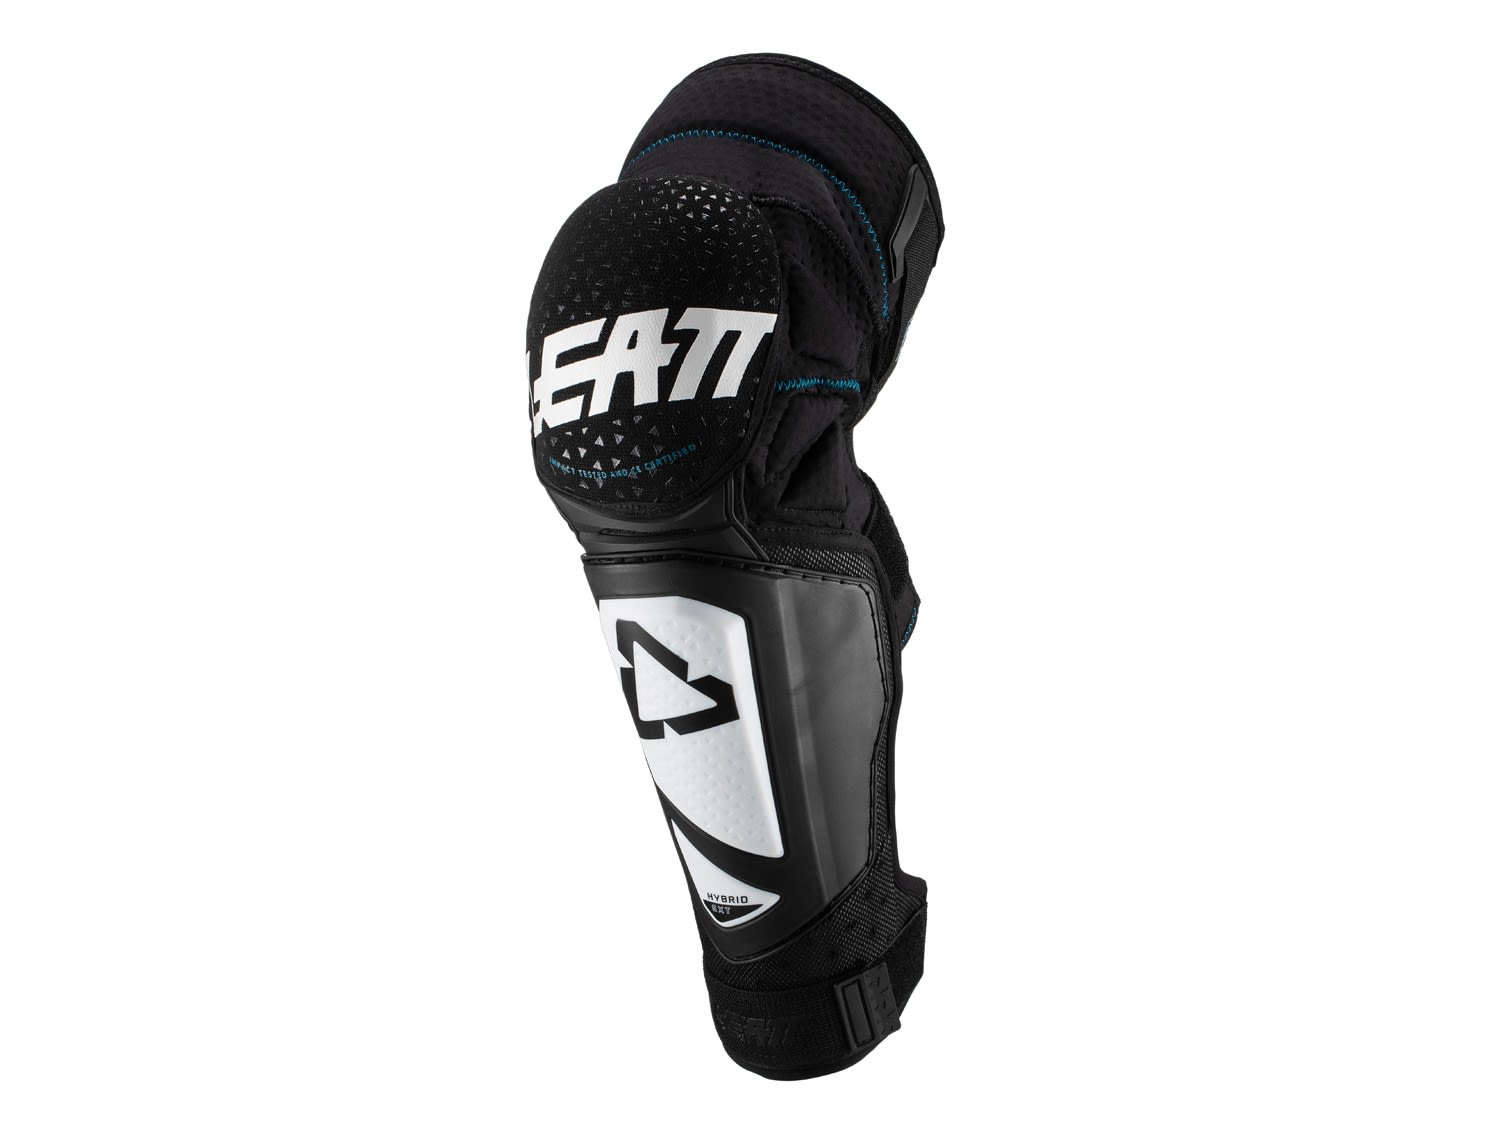 Leatt Knee und Shin Guard 3DF Hybrid EXT Junior Schwarz- Knieprotektoren- Grsse One Size - Farbe White - Black